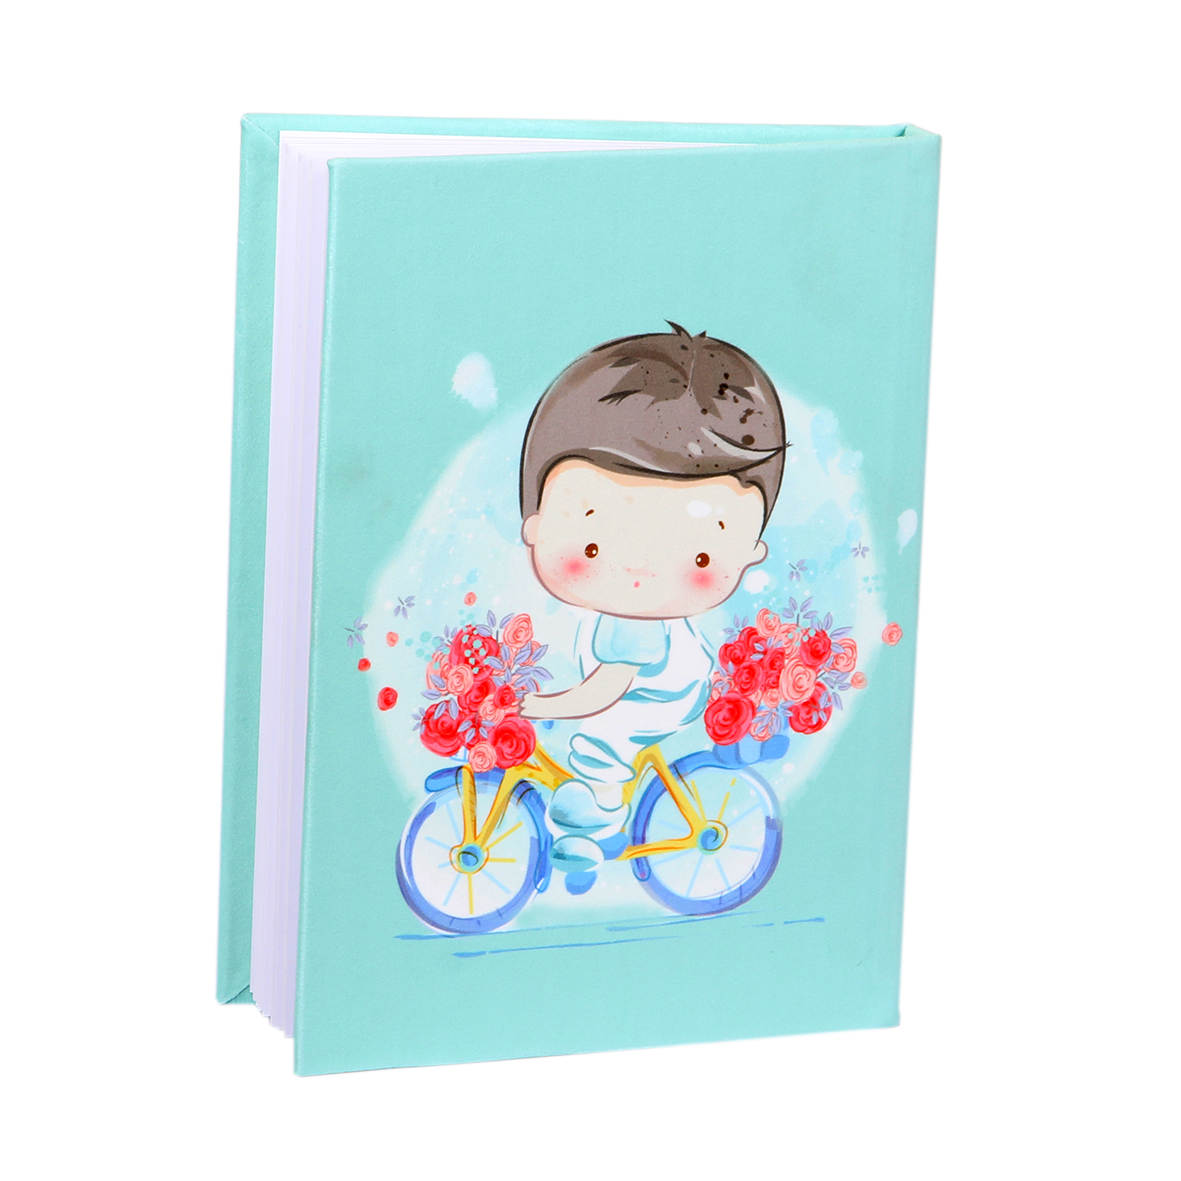 آلبوم عکس کودک مدل پسر و دوچرخه